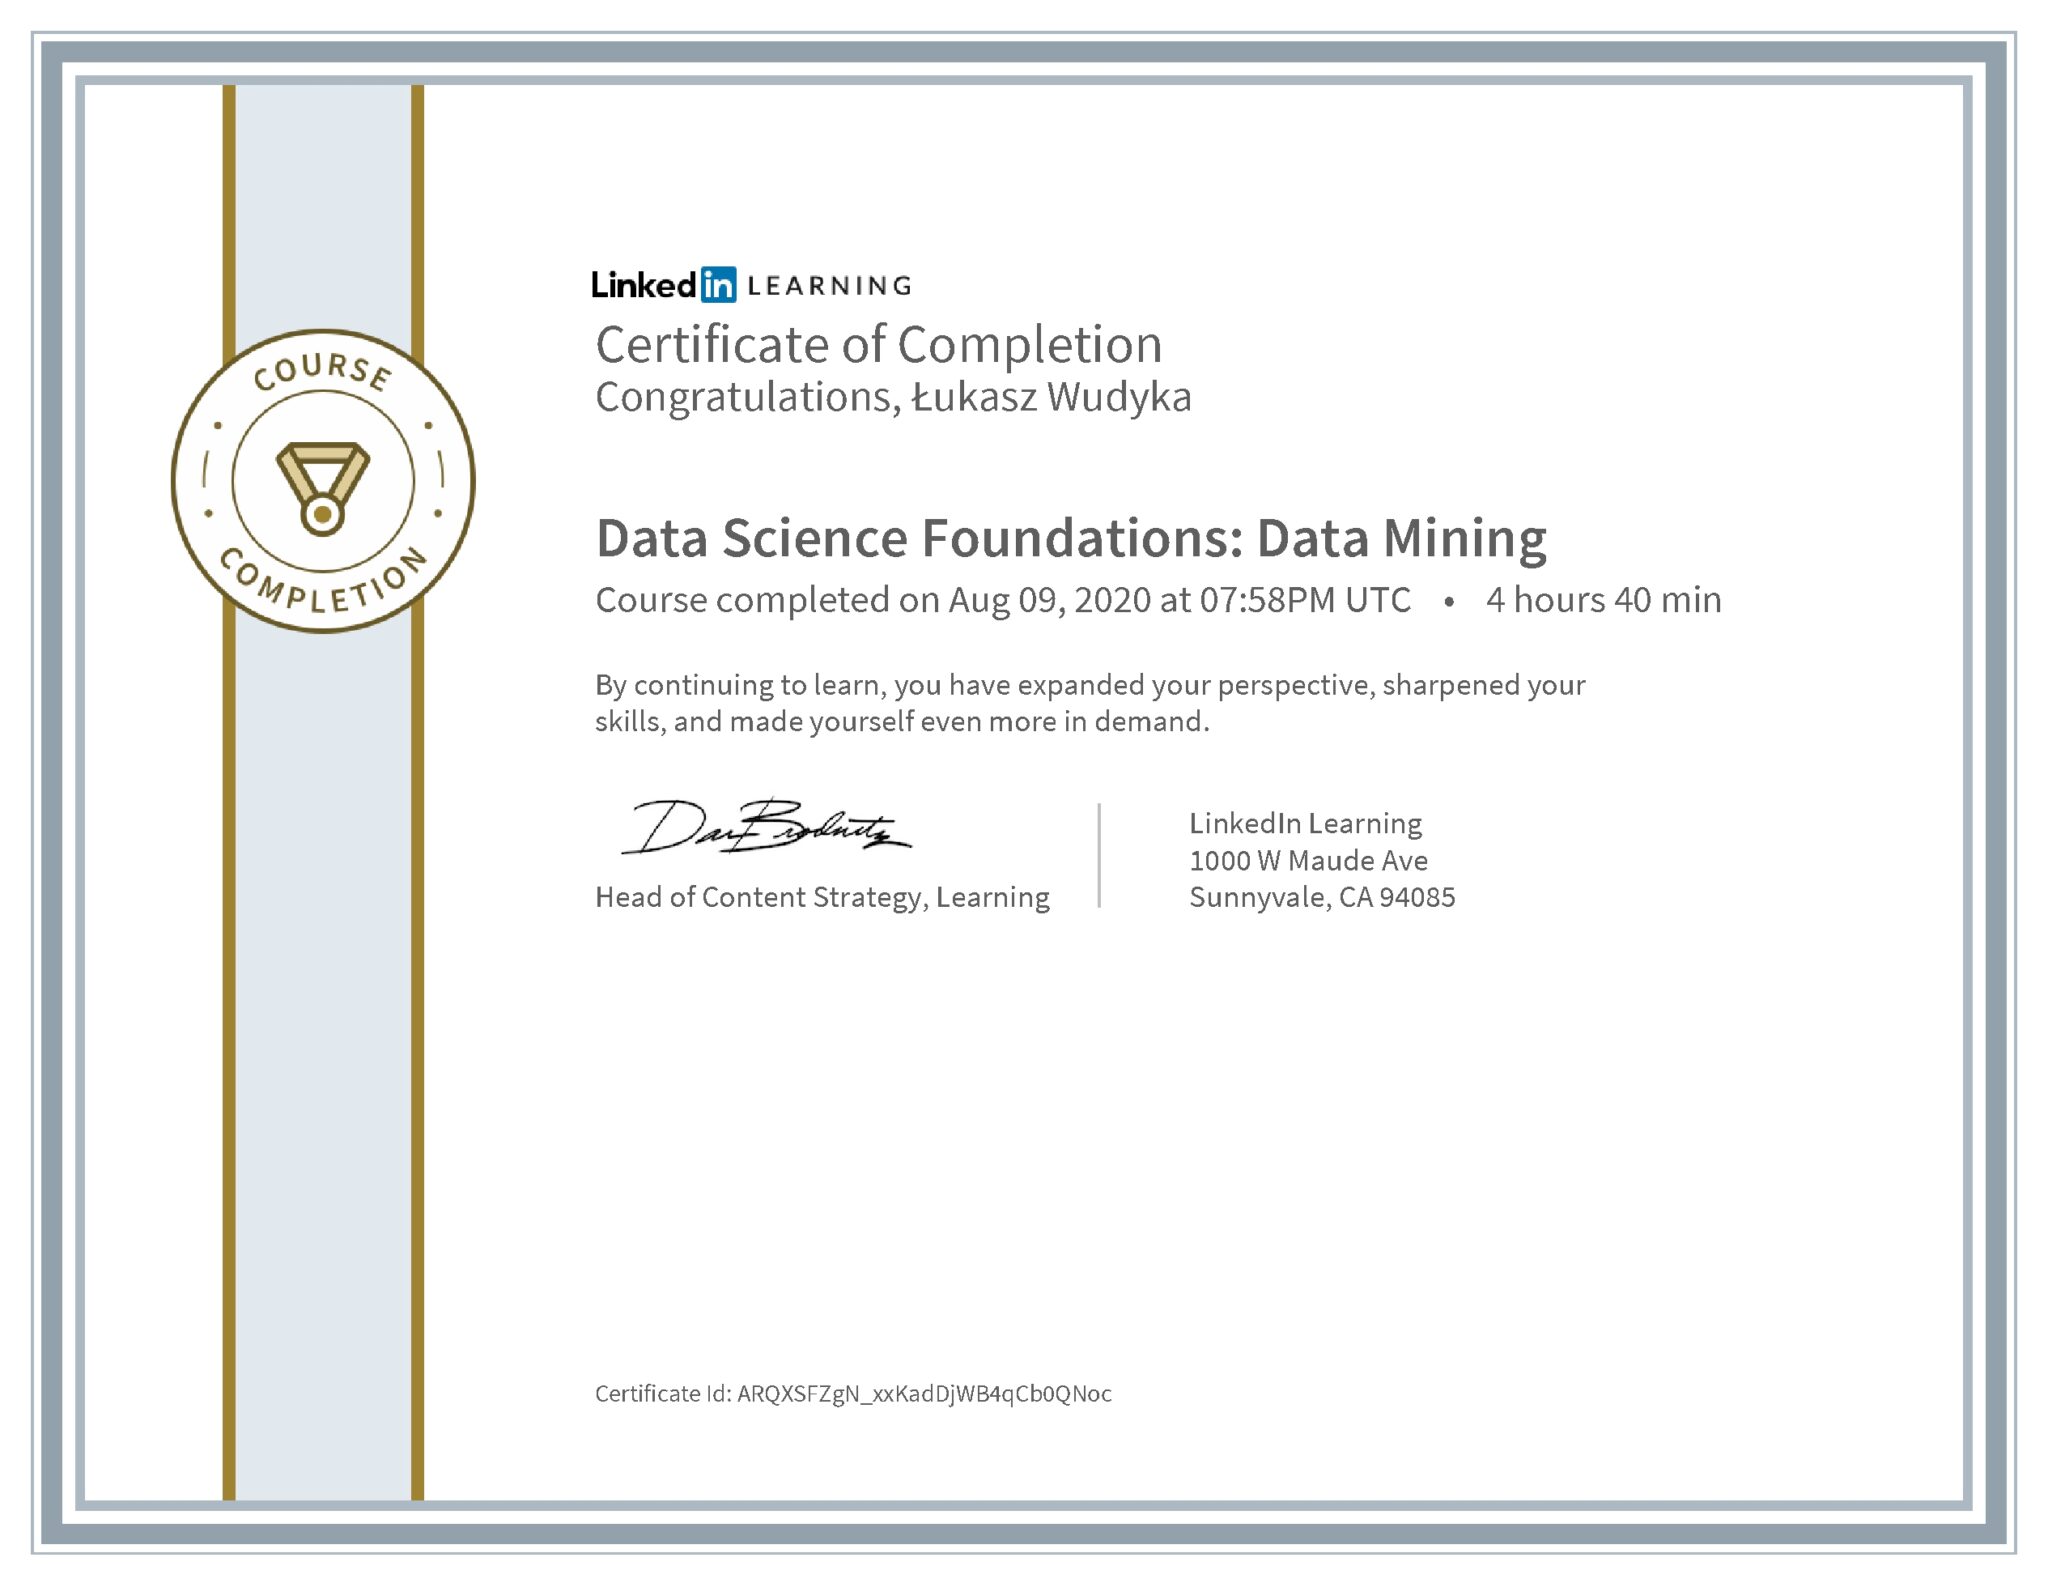 Łukasz Wudyka certyfikat LinkedIn Data Science Foundations: Data Mining